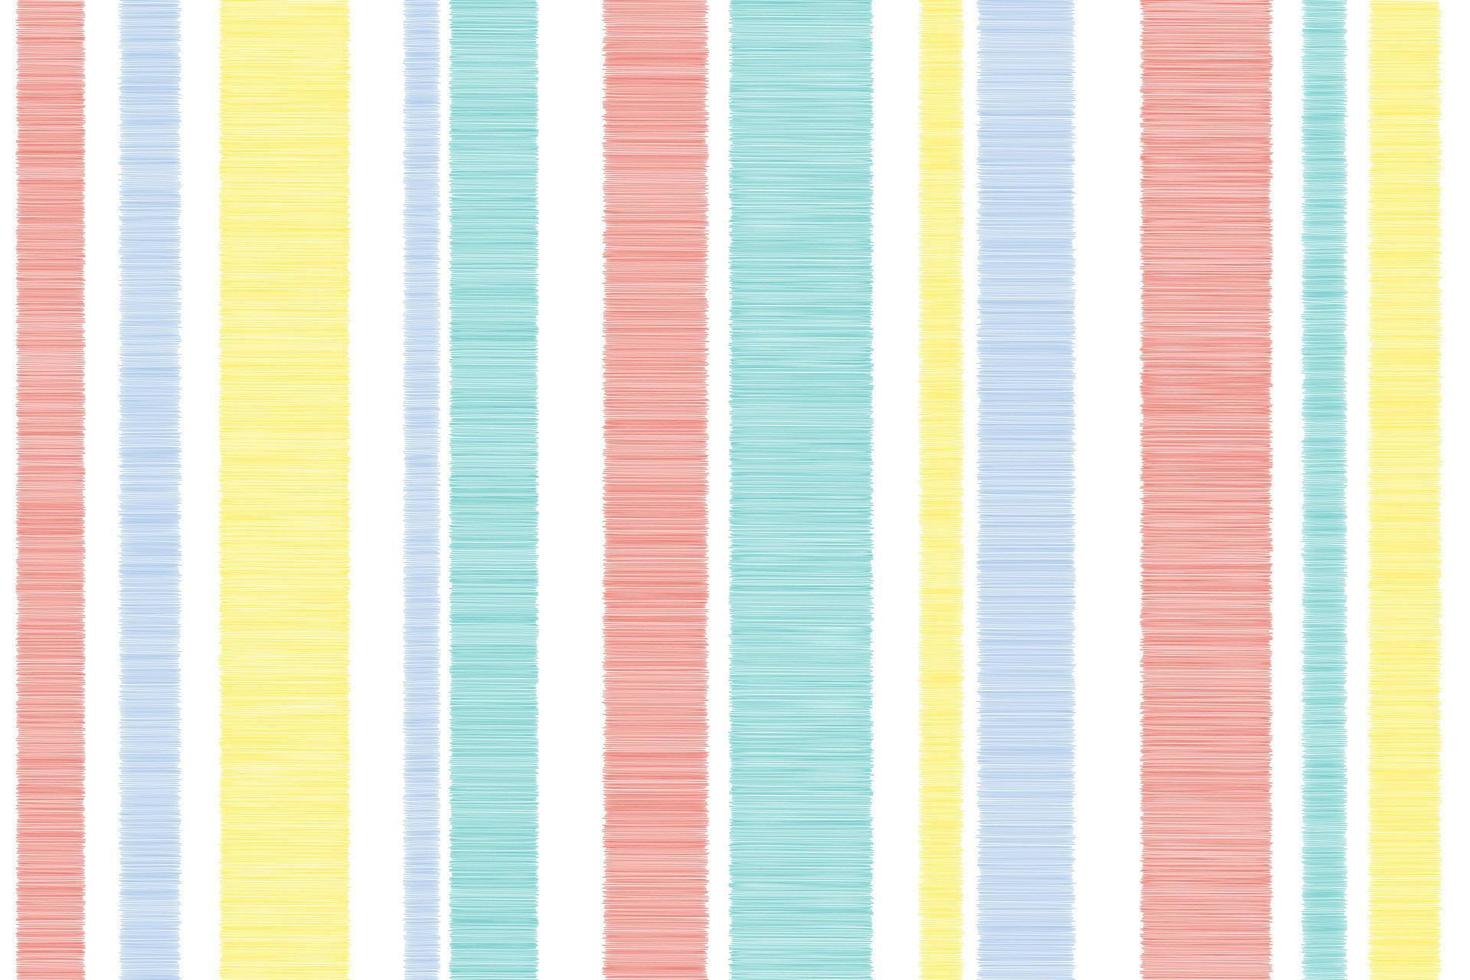 nahtloser ikat-vektor weiß bunter hintergrund stoffmuster streifen unwucht streifenmuster hübsch vertikal blau rosa gelb pastellfarbe streifen unterschiedlicher größe gitterstoff bunte illustration. vektor